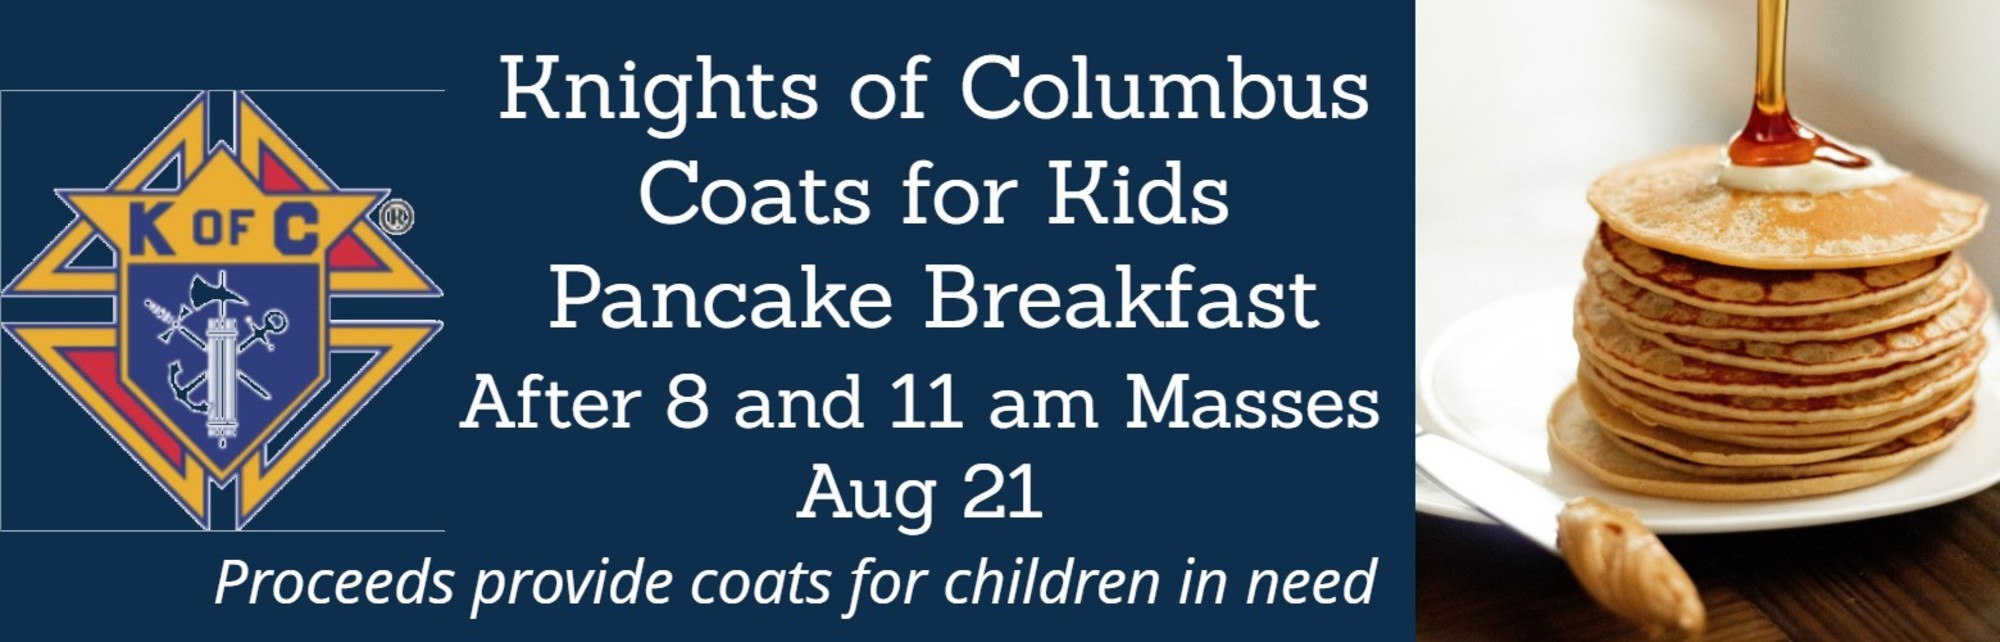 Kof C Coats For Kids